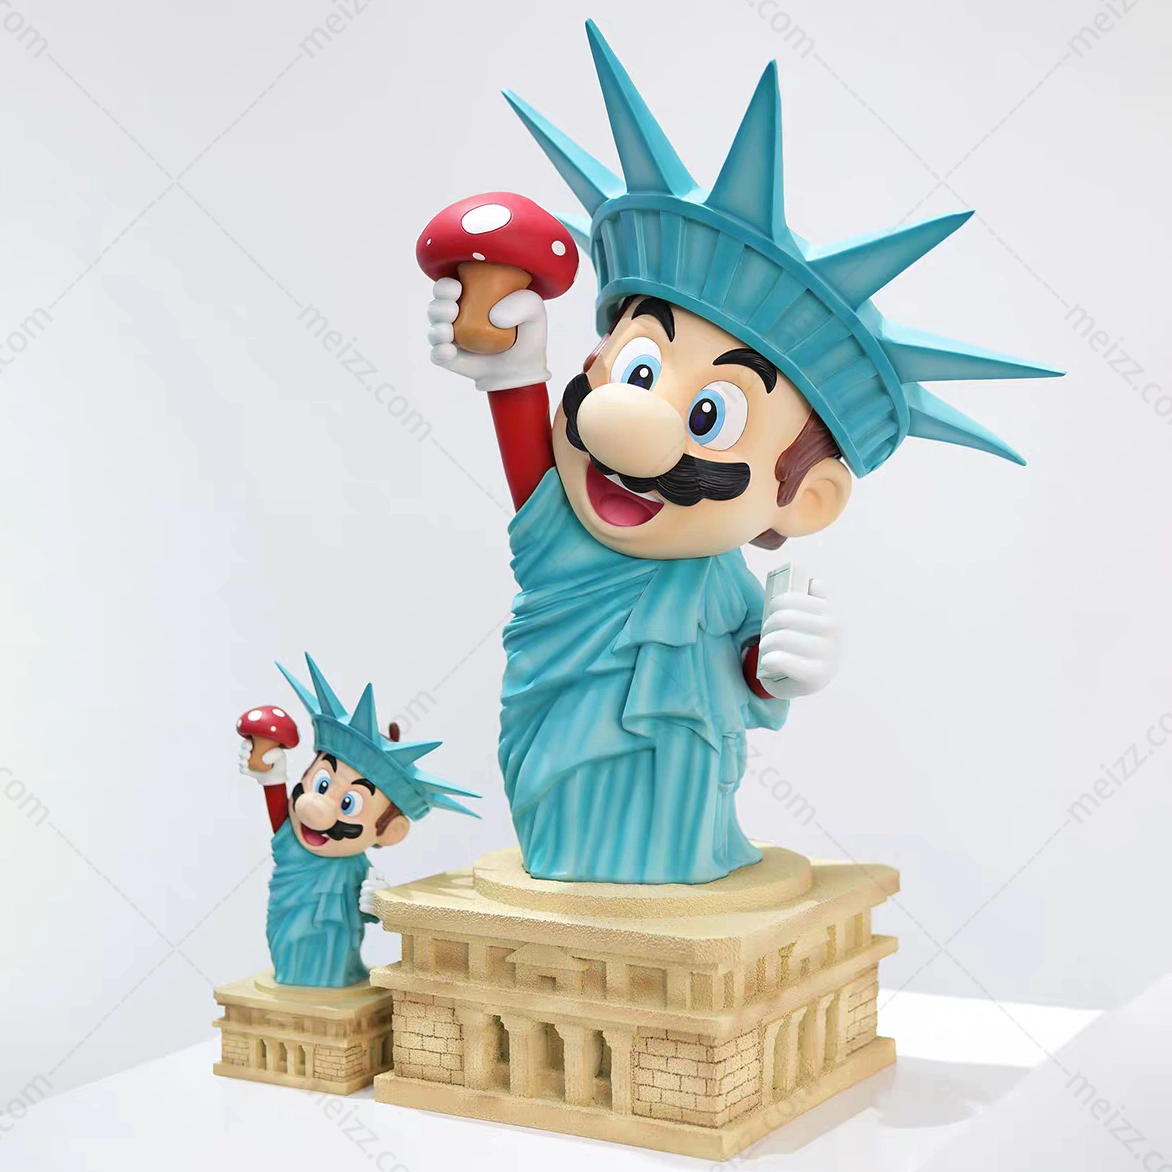 Mario Statue for Sale